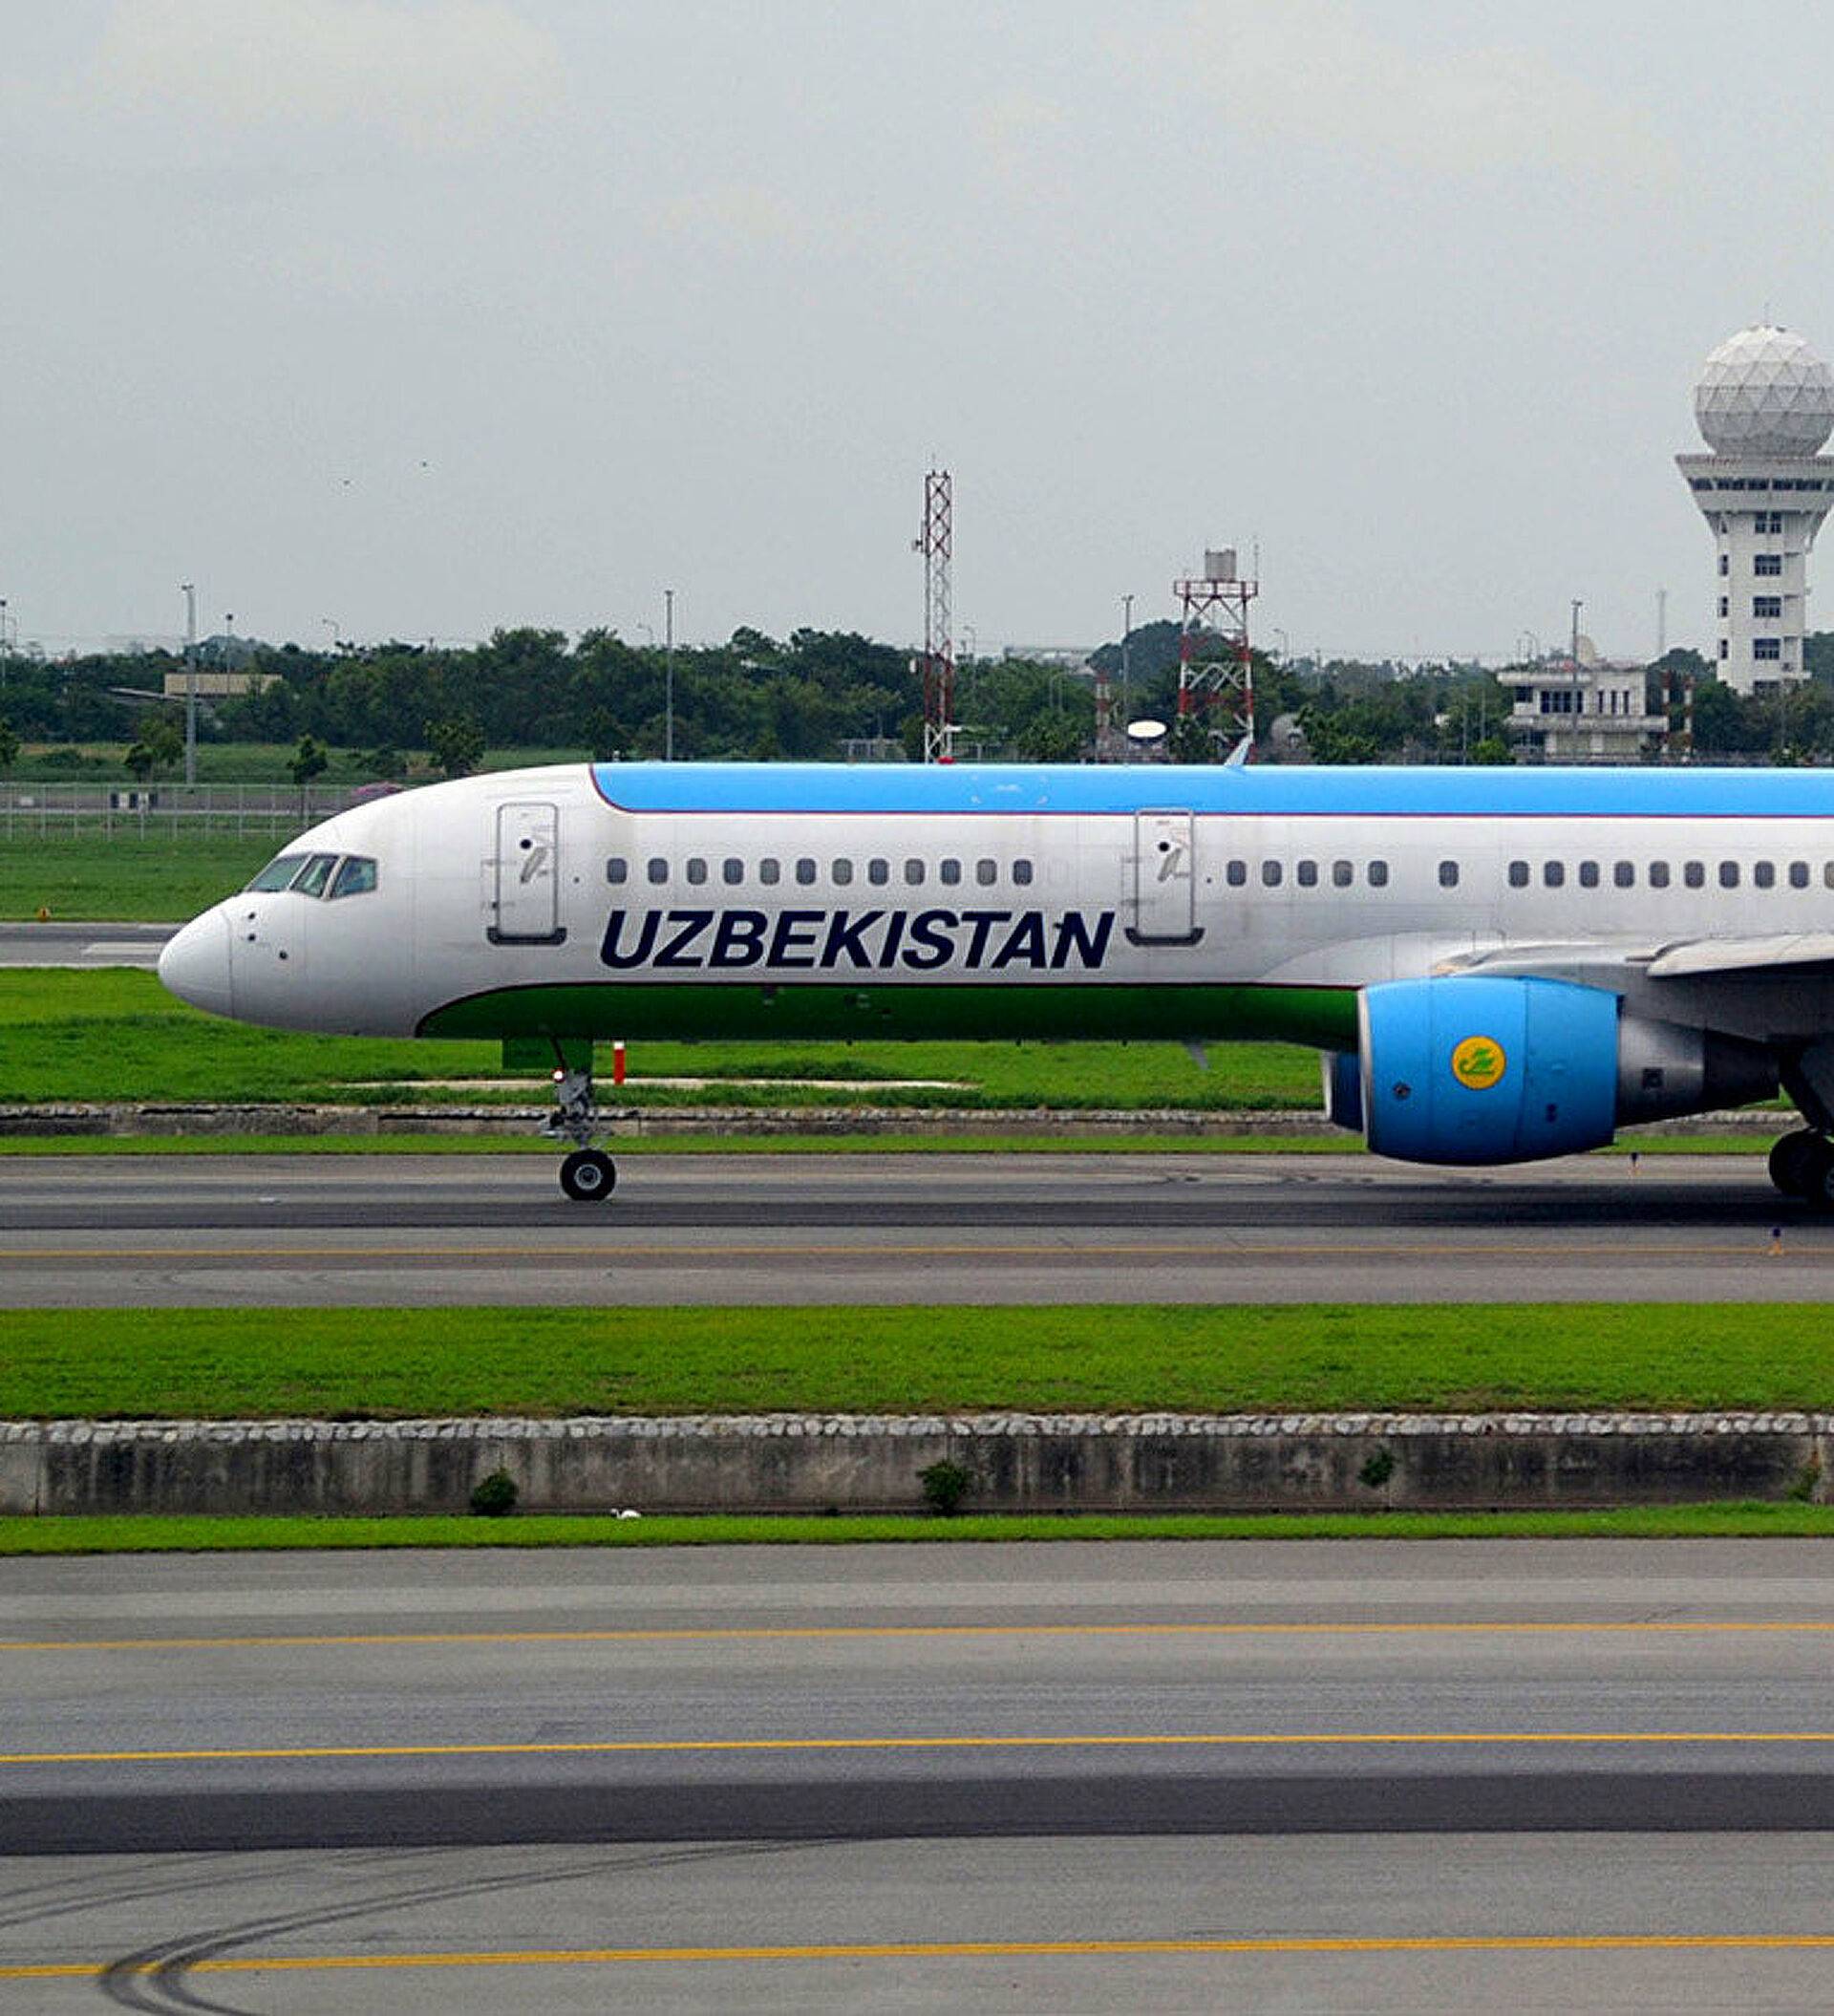 Объявляем о начале полётов по новой модели авиаперевозок: uzbekistan express